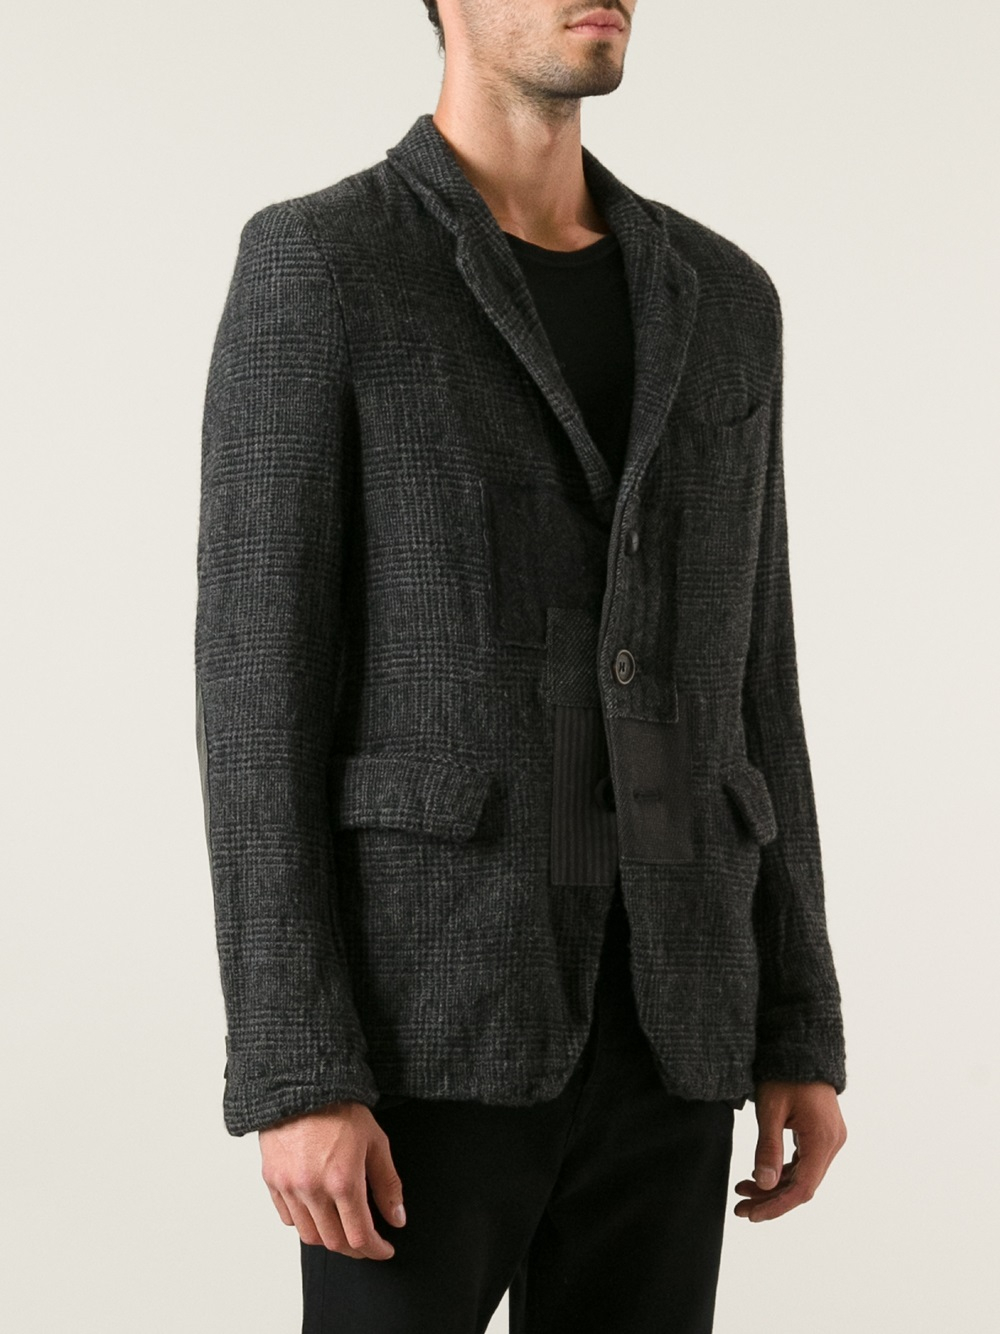 Junya Watanabe Tweed Blazer in Black for Men - Lyst